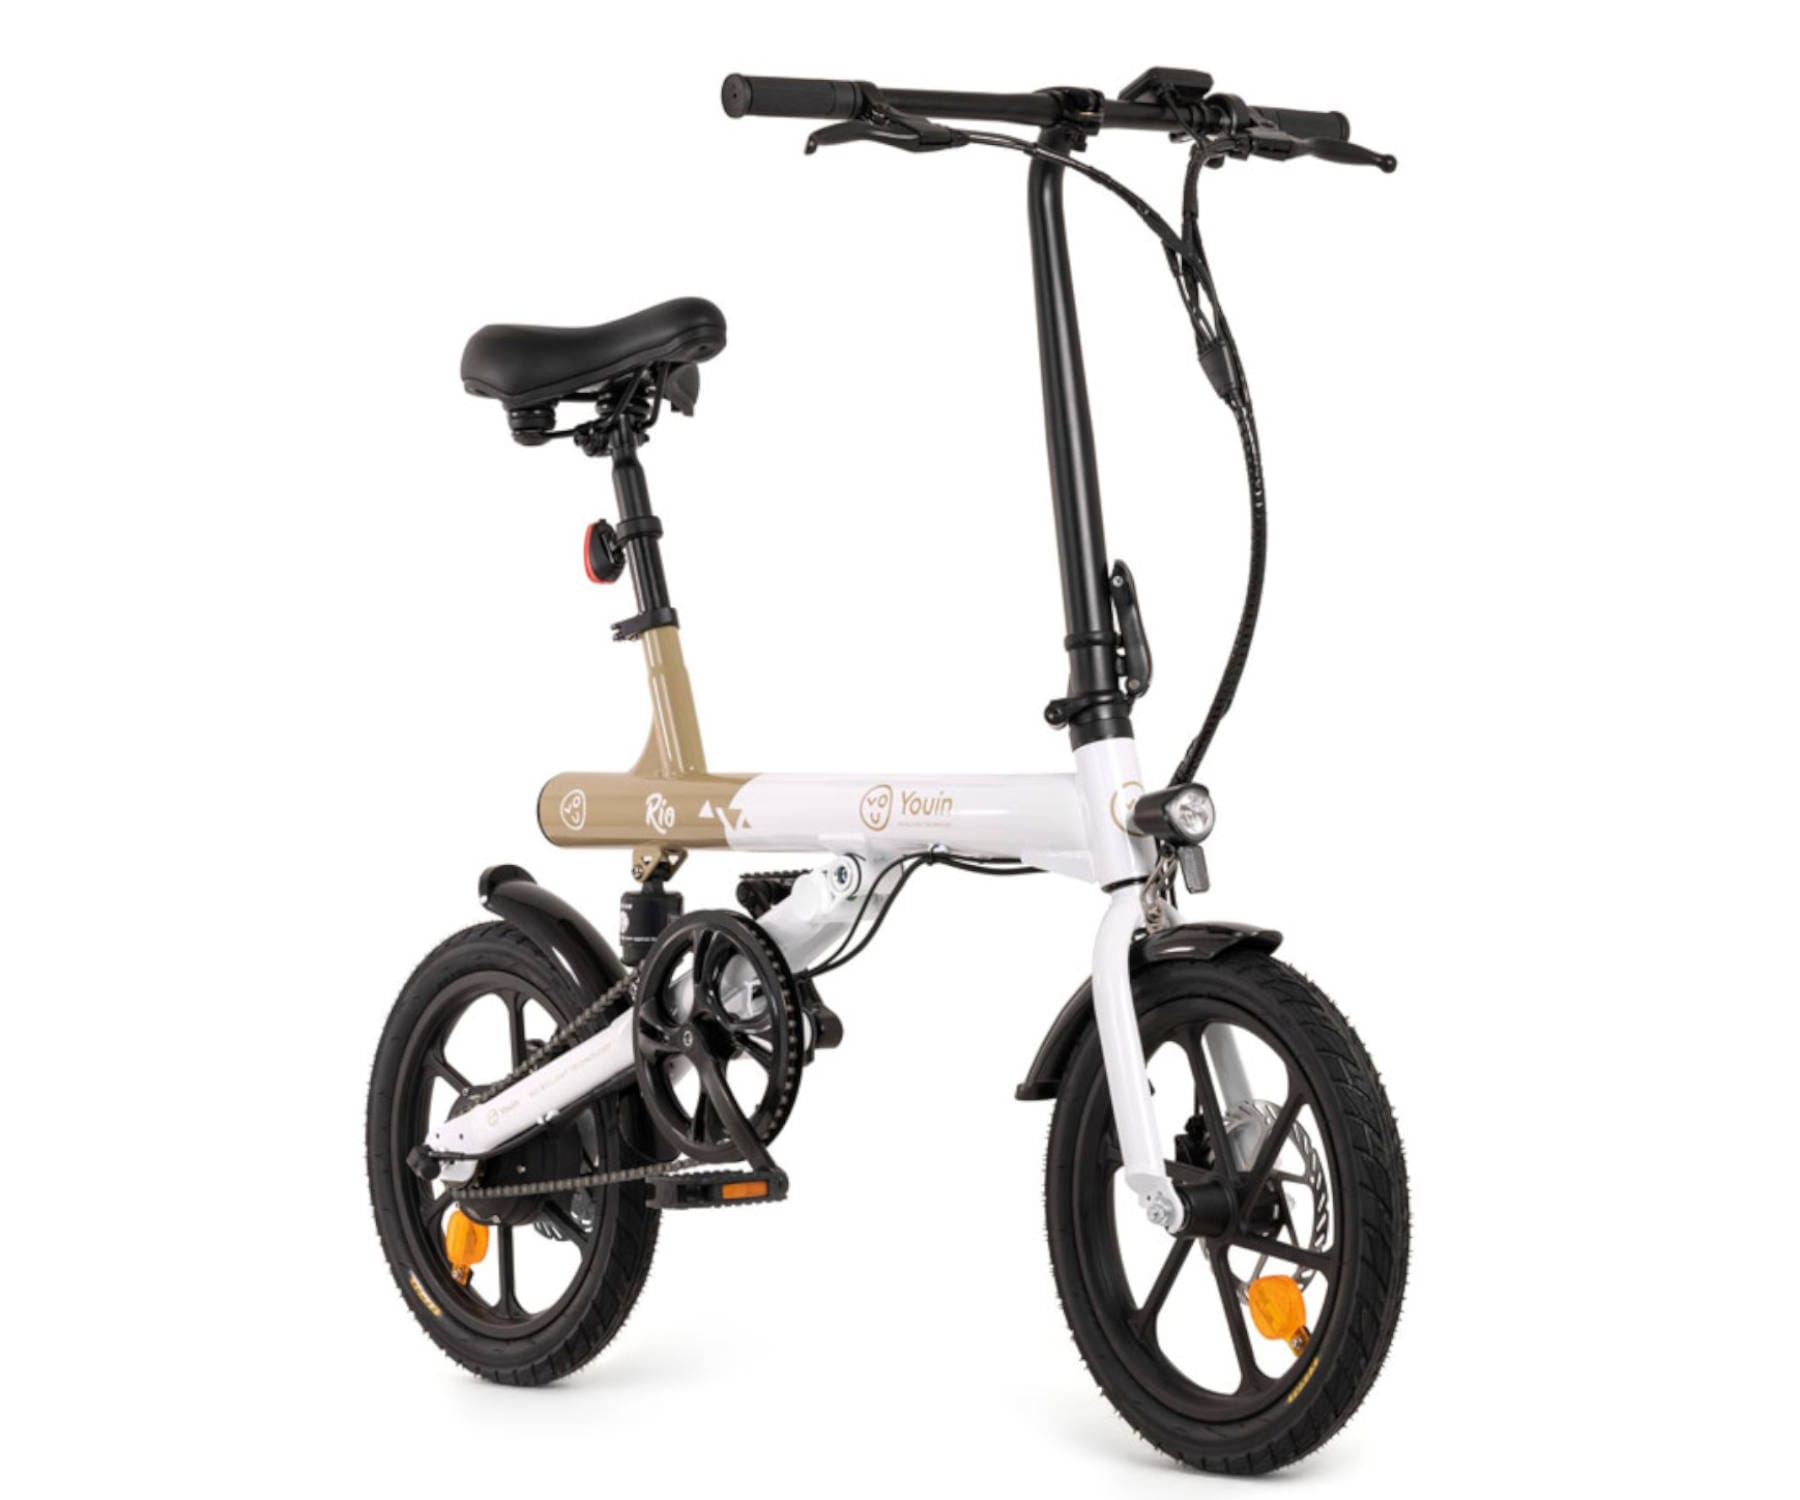 Youin You-Ride Rio / Bicicleta eléctrica plegable